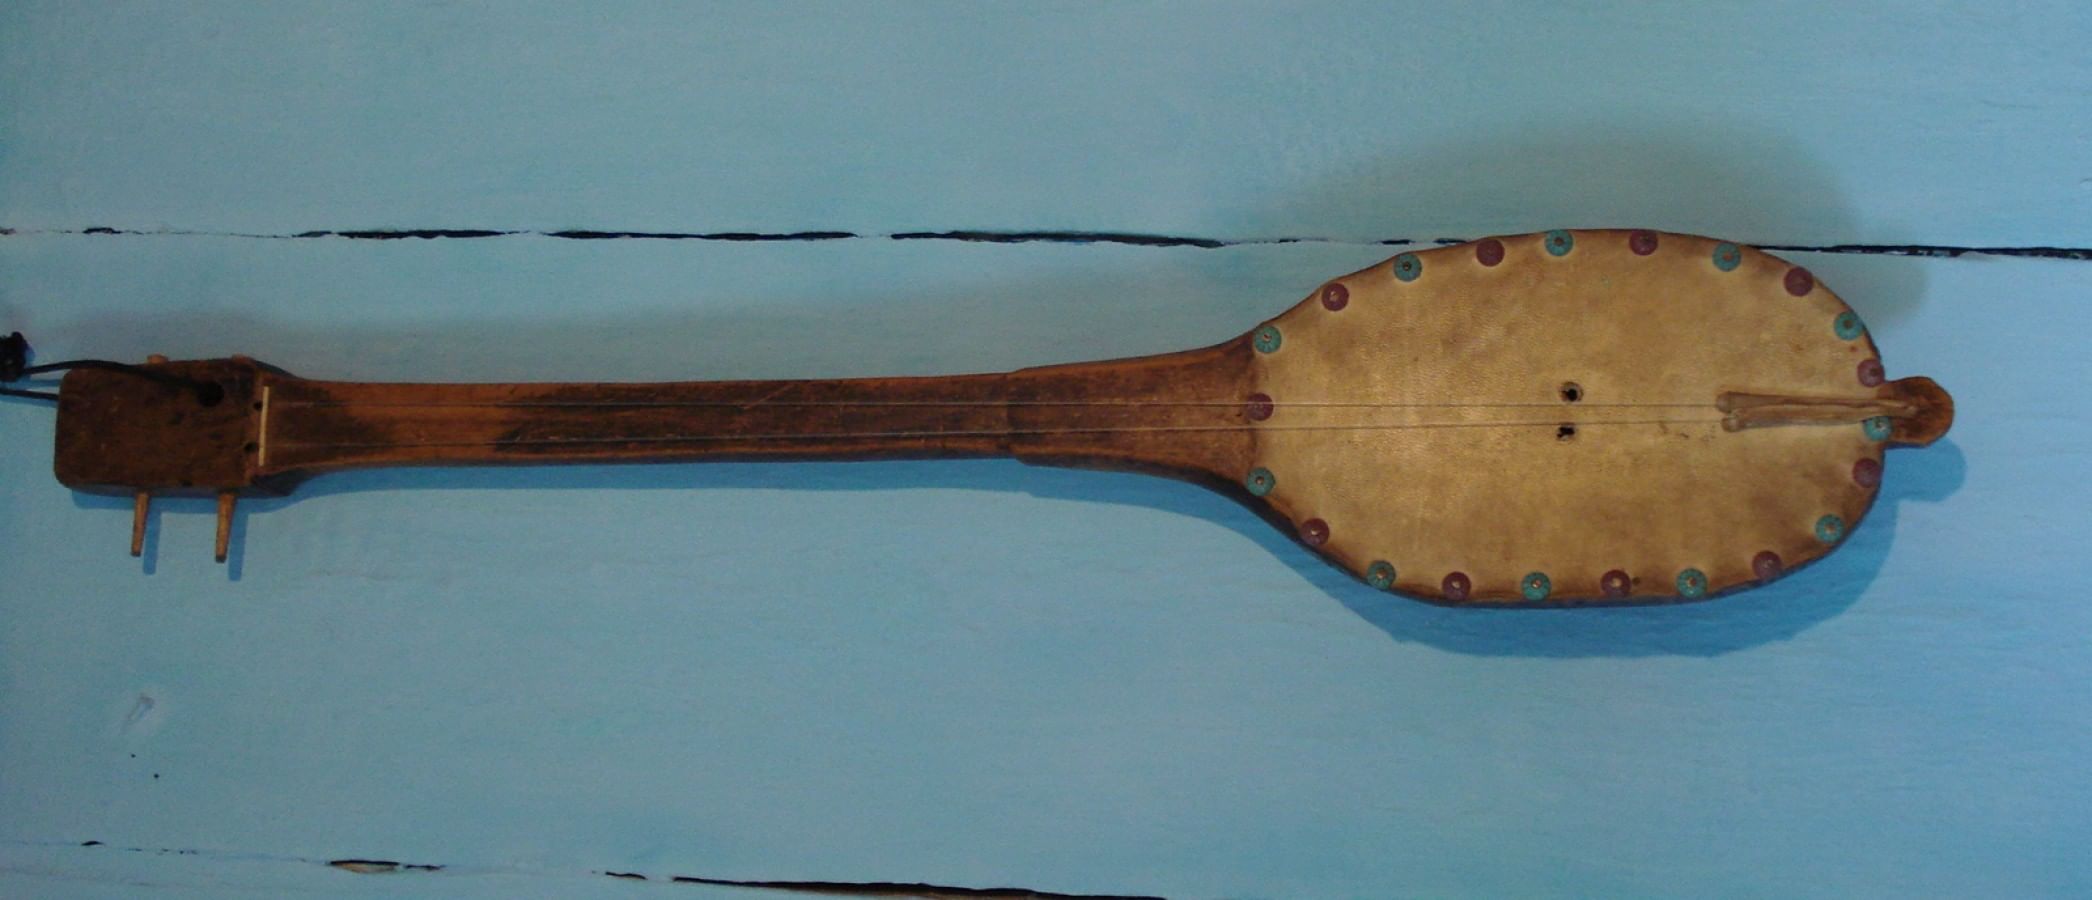 Топшур. Шертер музыкальный инструмент. Казахские национальные инструмент шертер. Топшуур музыкальный инструмент. Домбра музыкальный инструмент.